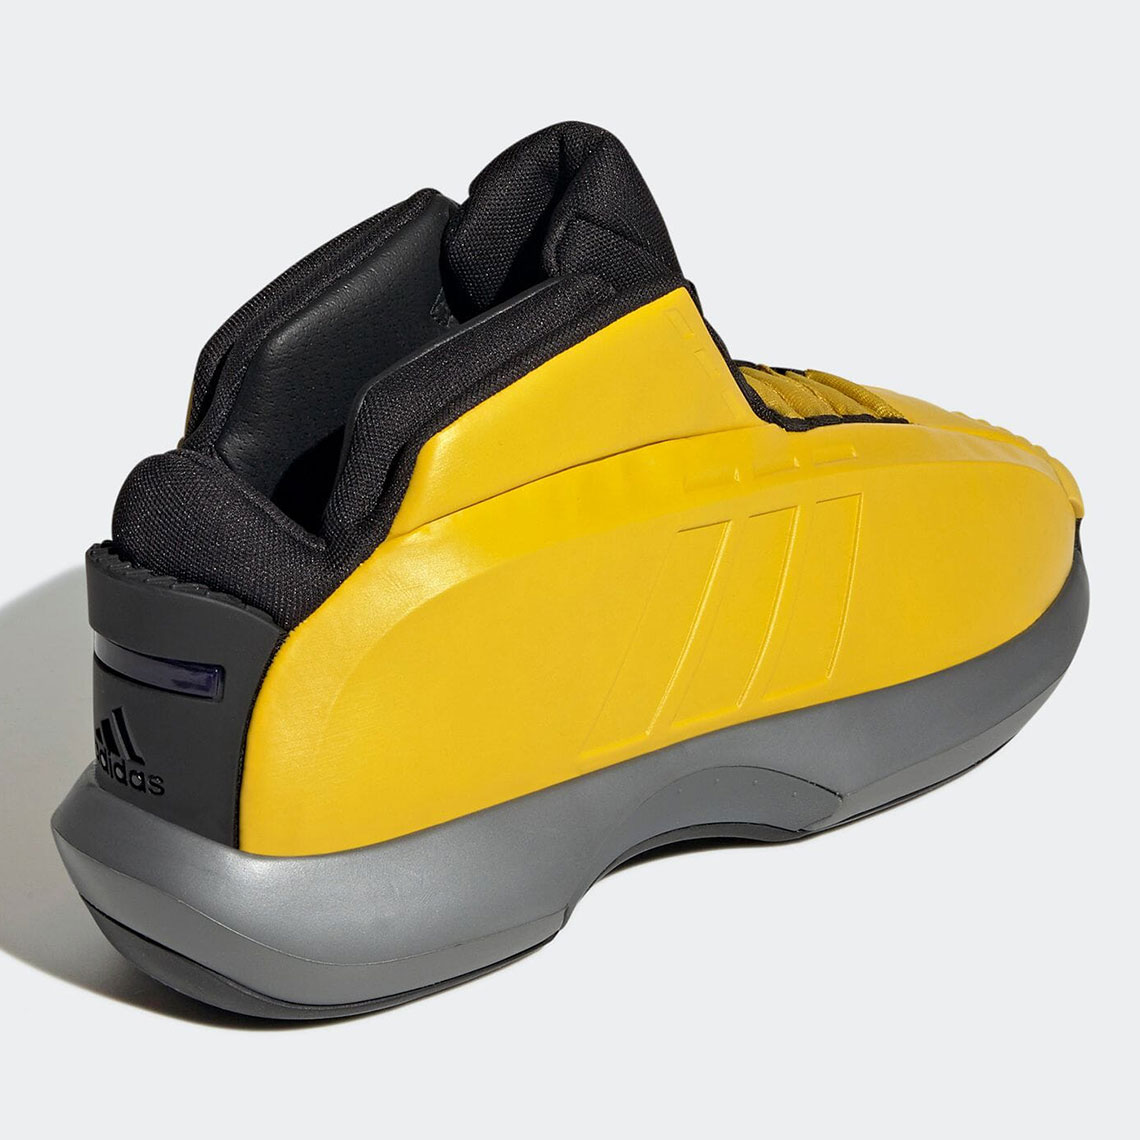 شراء بطاقات سوا adidas Kobe Crazy 1 Yellow GY3808 Release Date | SneakerNews.com شراء بطاقات سوا